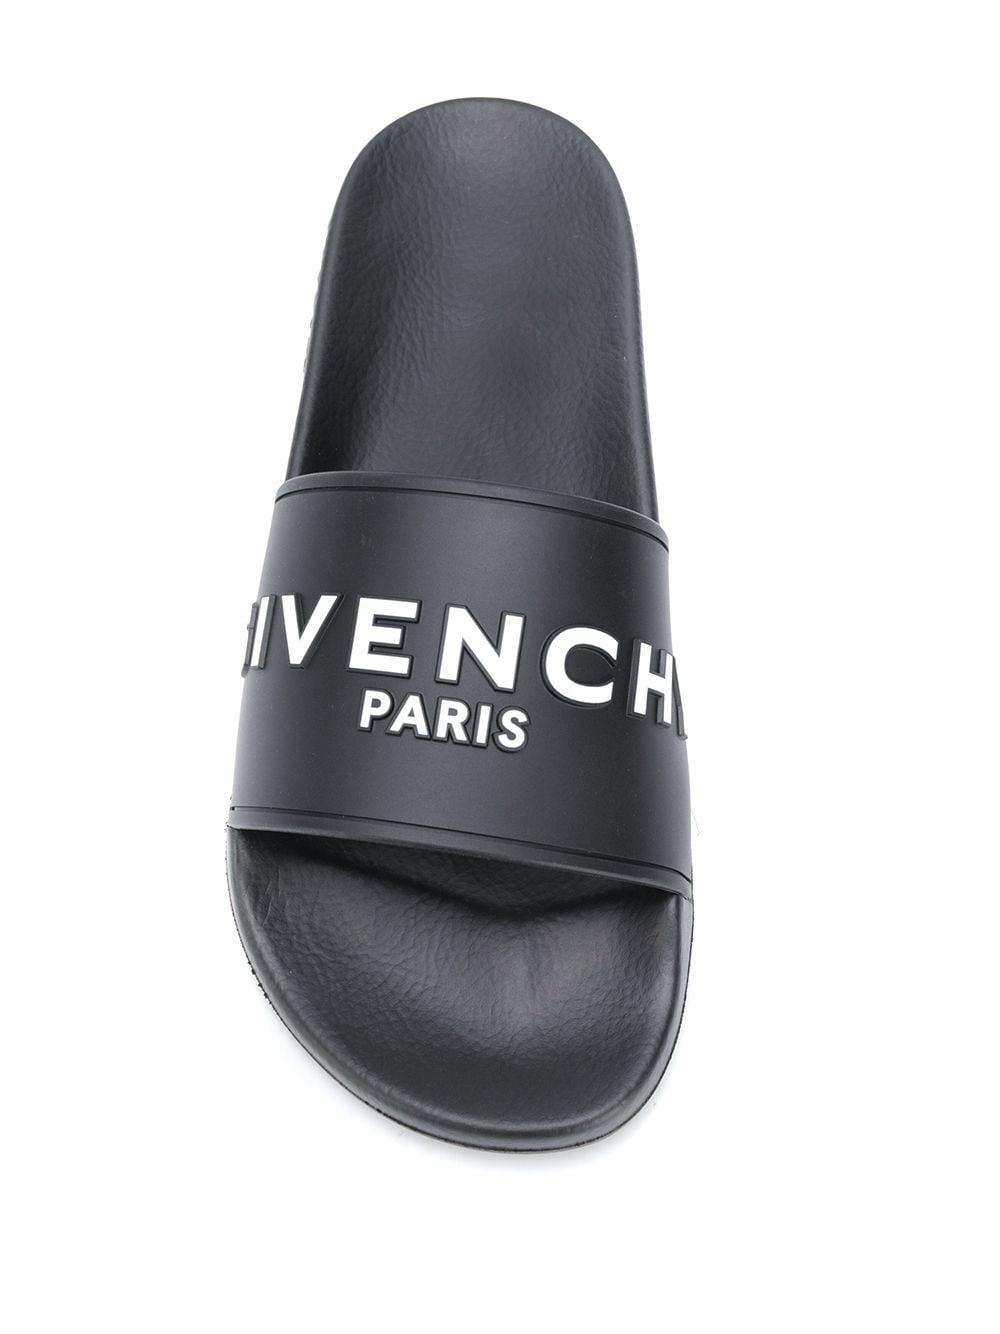 Givenchy Logo-embossed Slides in Black for Men - Lyst